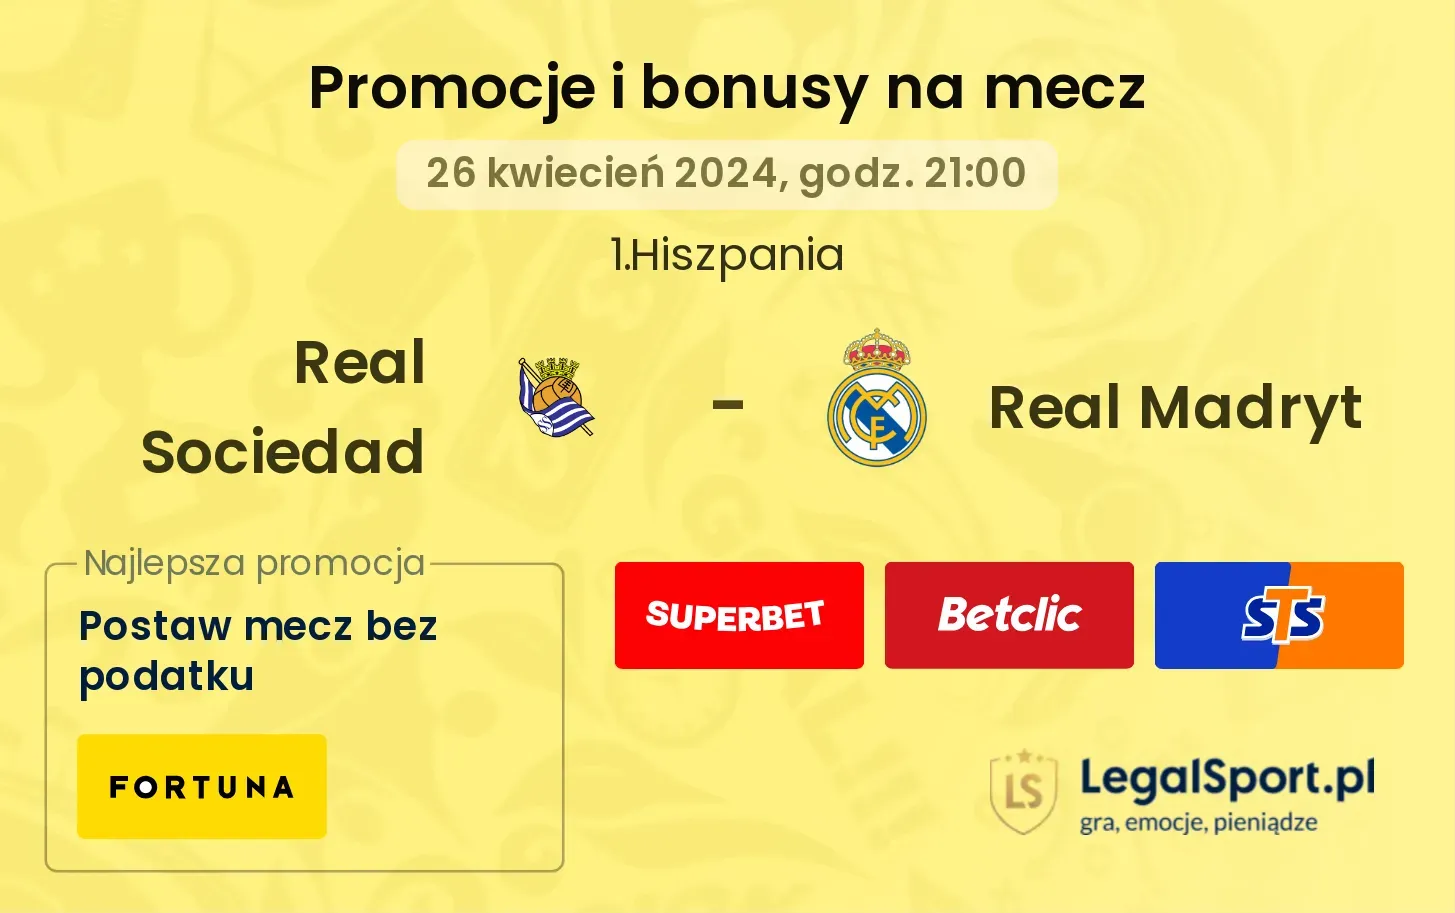 Real Sociedad - Real Madryt promocje bonusy na mecz